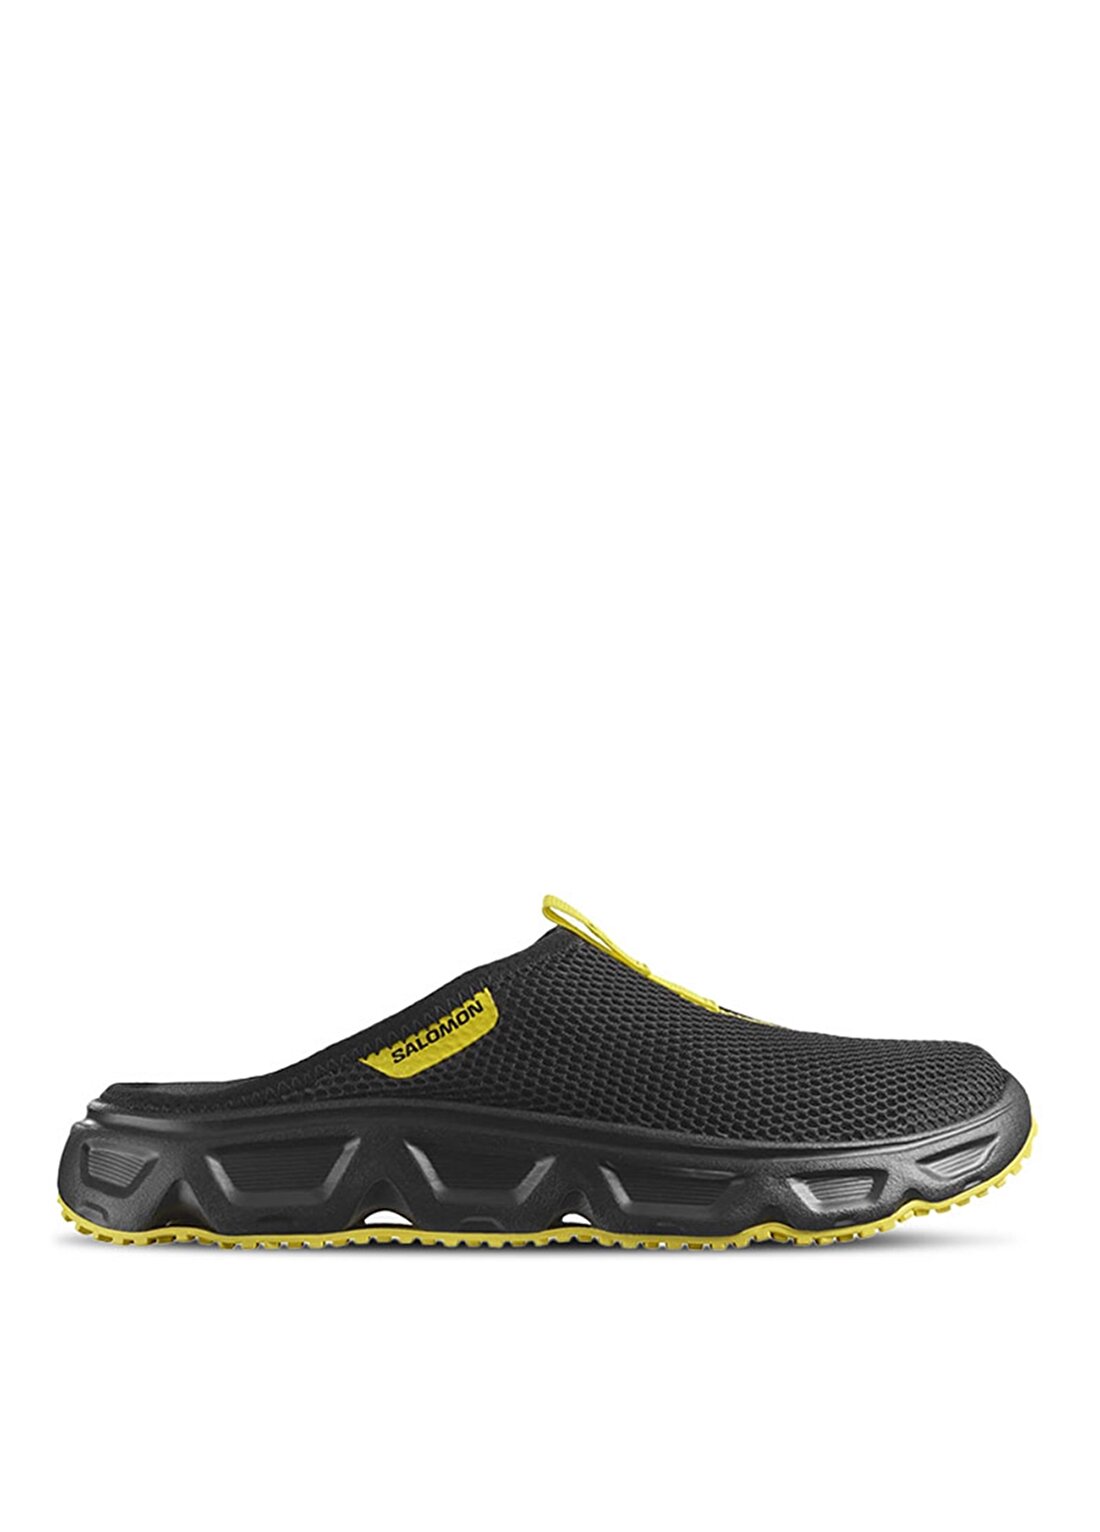 Salomon Siyah Erkek Outdoor Ayakkabısı L47112100_REELAX SLIDE 6.0